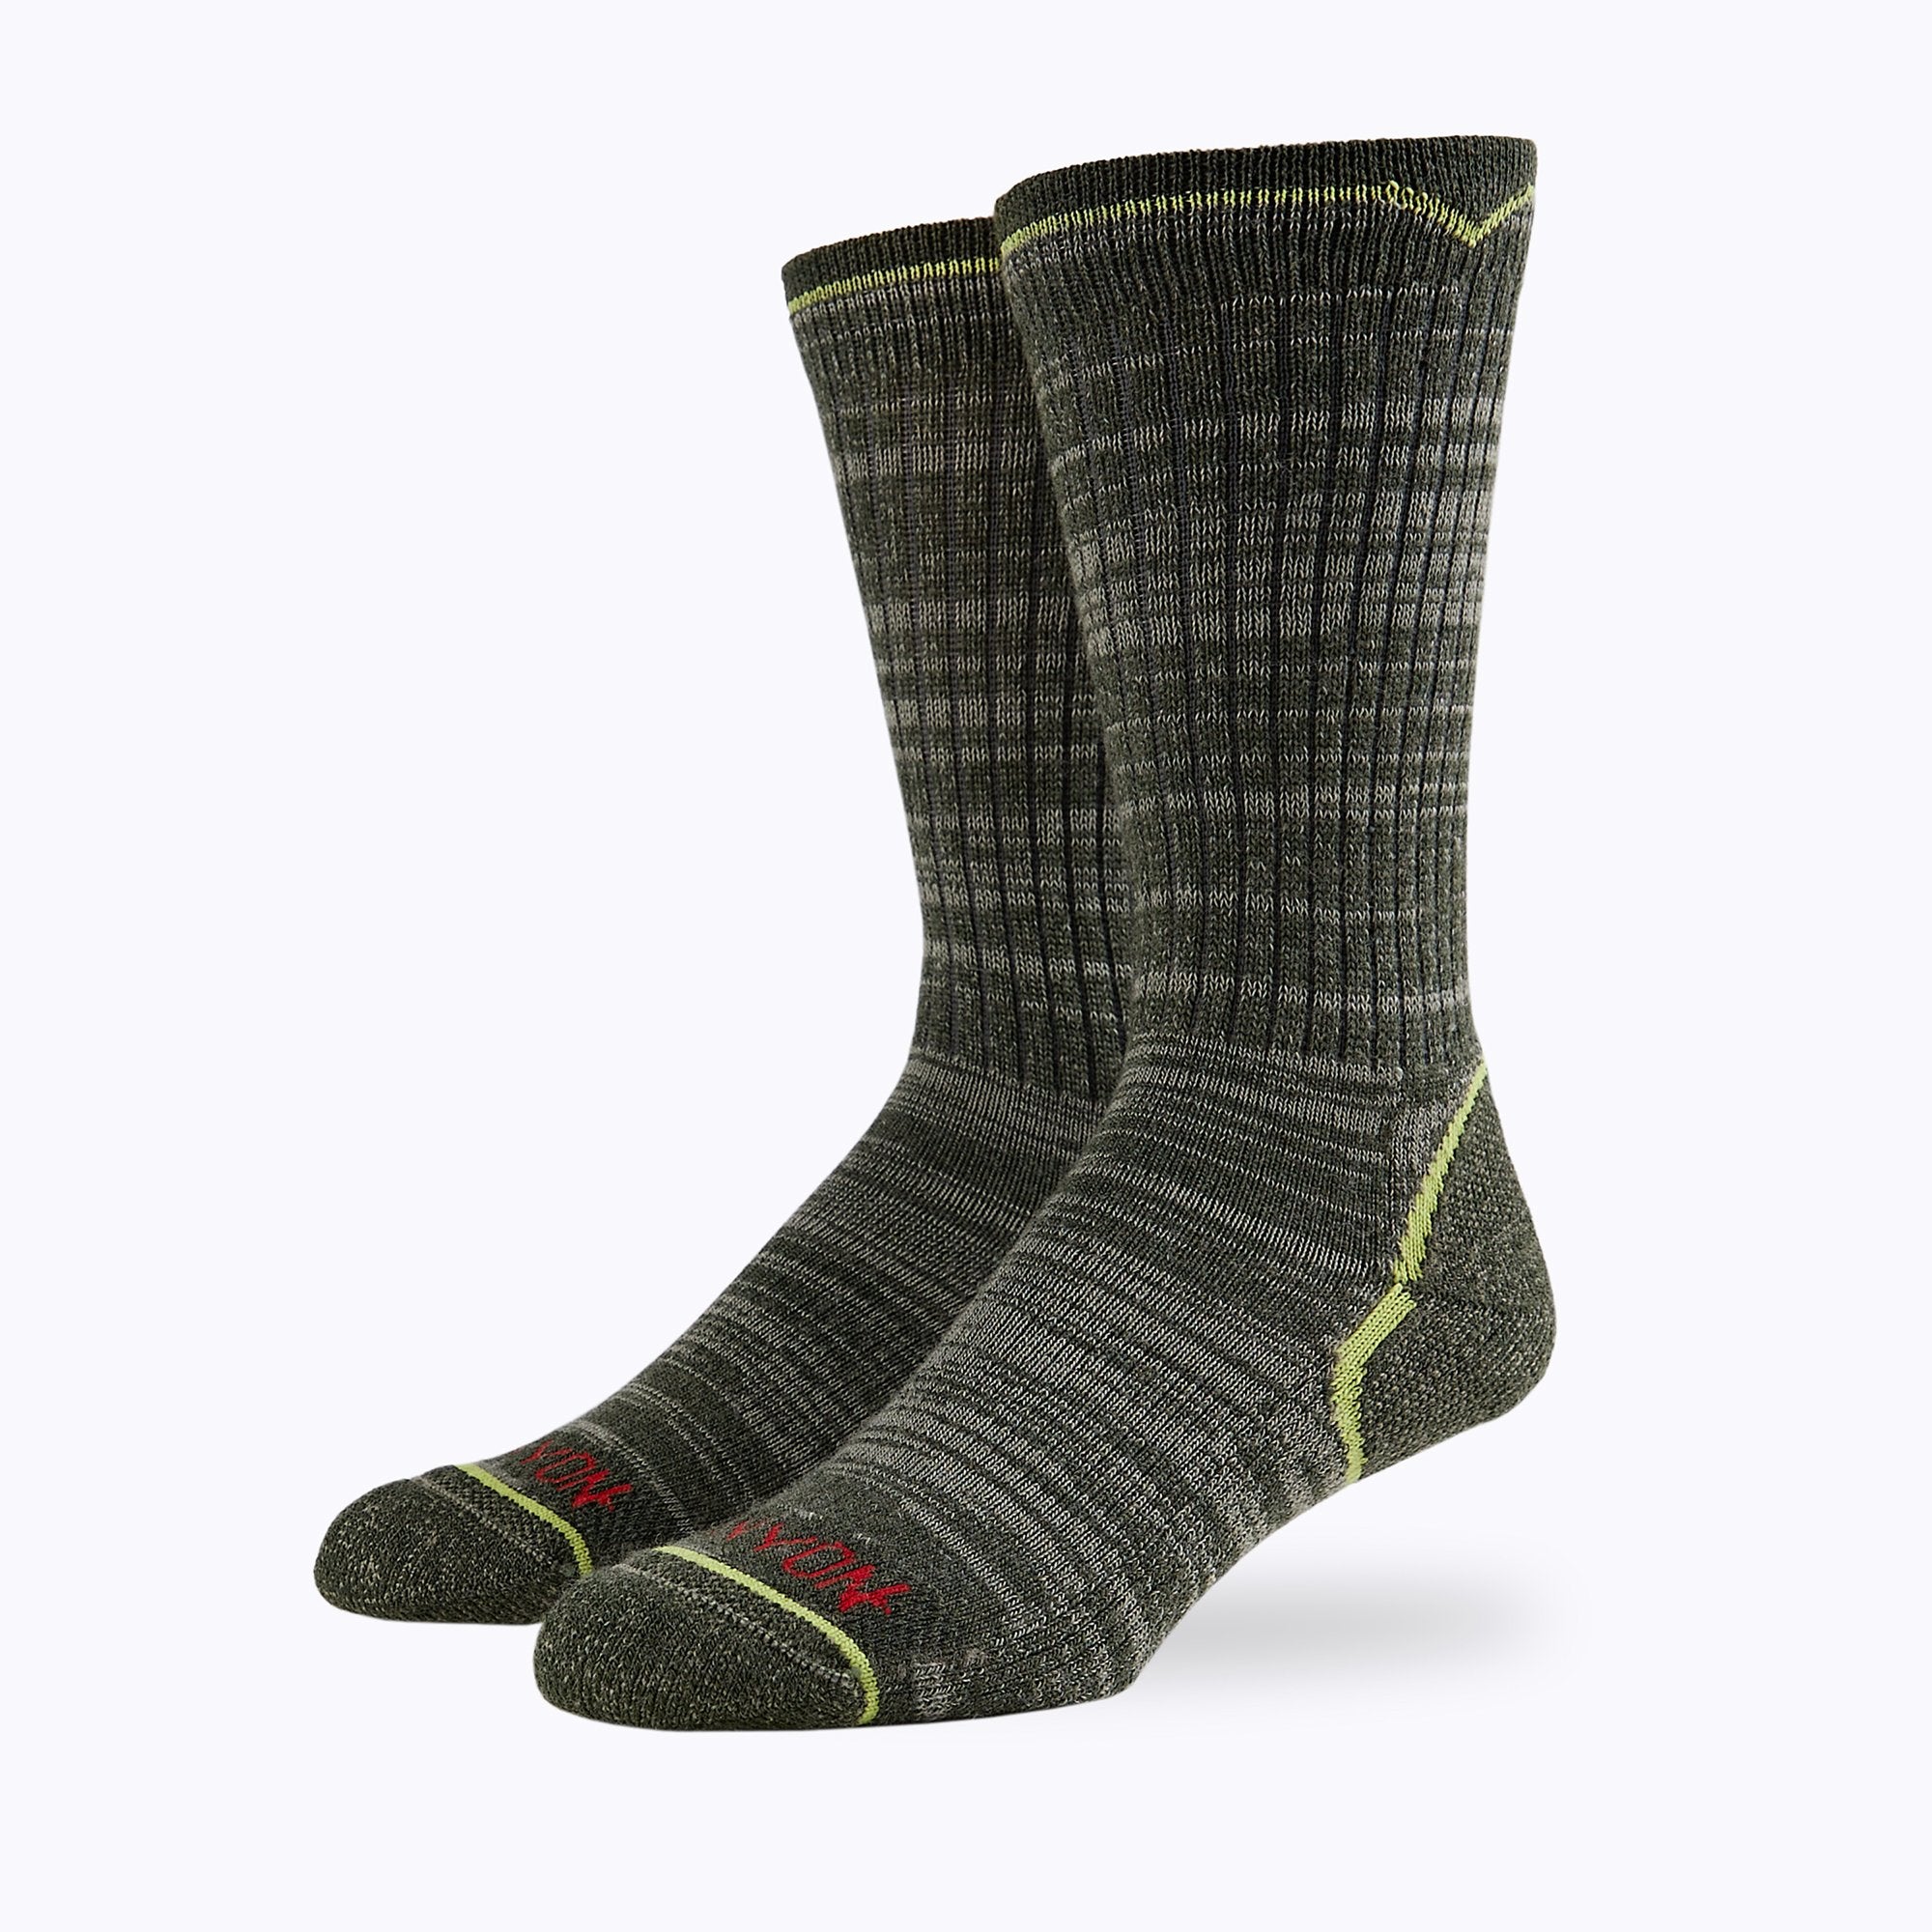 James Mid Calf Sock 2 Pack Mix Mens Socks - Capitan Boots